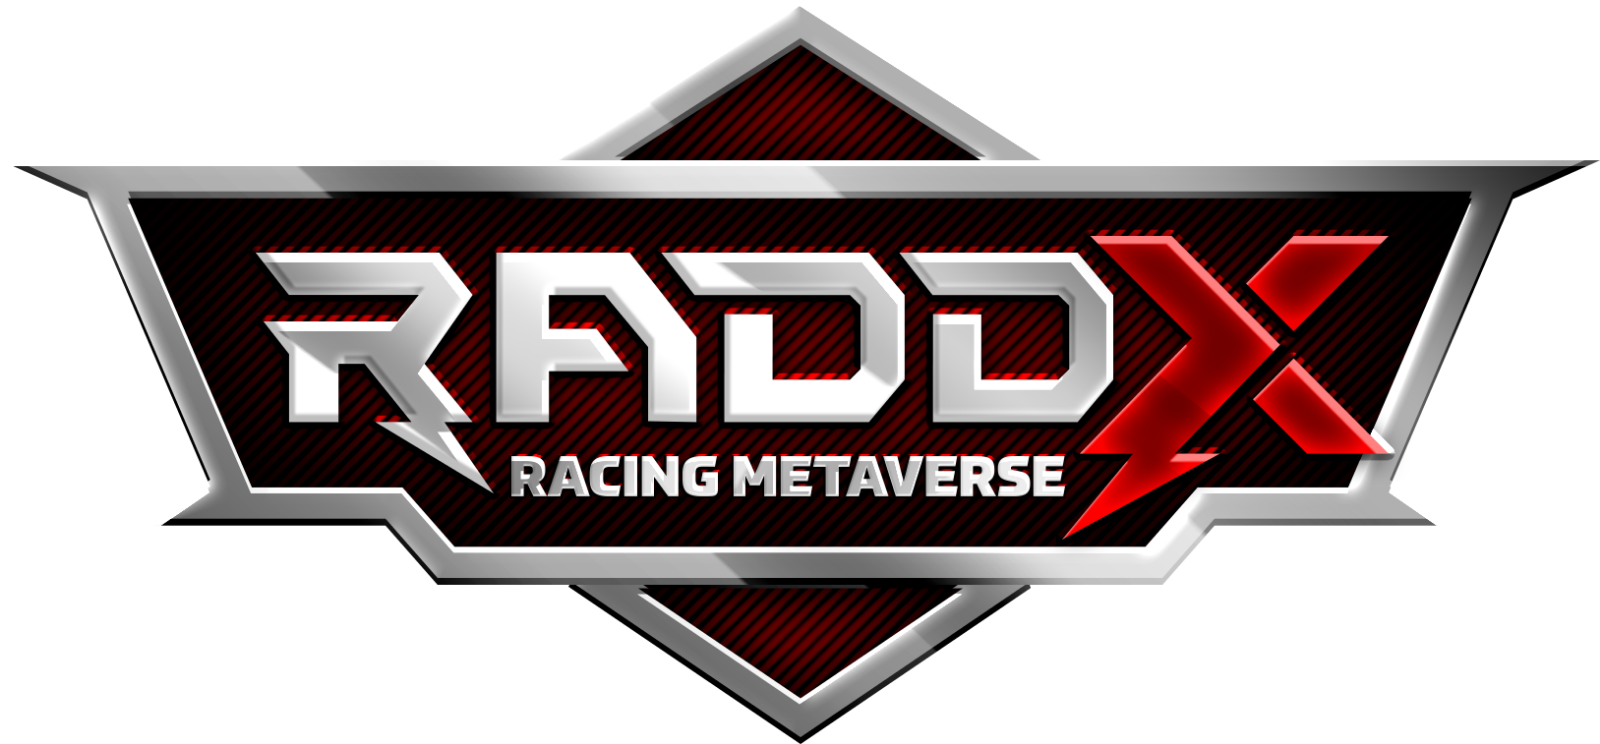 Raddx Racing Metaverse